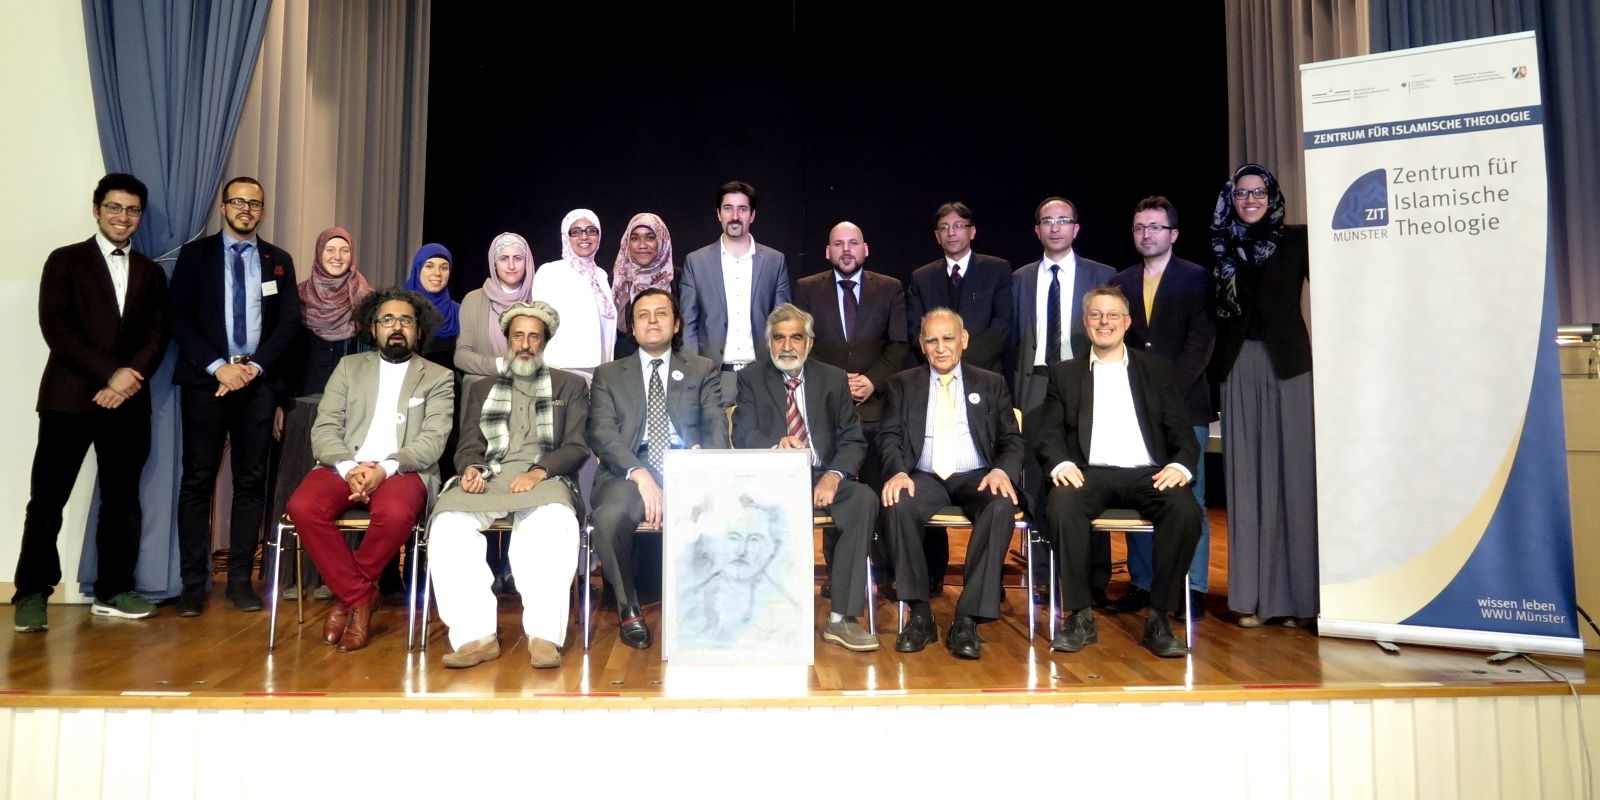 Die Referenten und Organisatoren des Symposiums stehend und sitzend, rechts das Roll-up des ZIT, vor der ersten Reihe ein gezeichnetes Porträt von Muhammad Iqbal